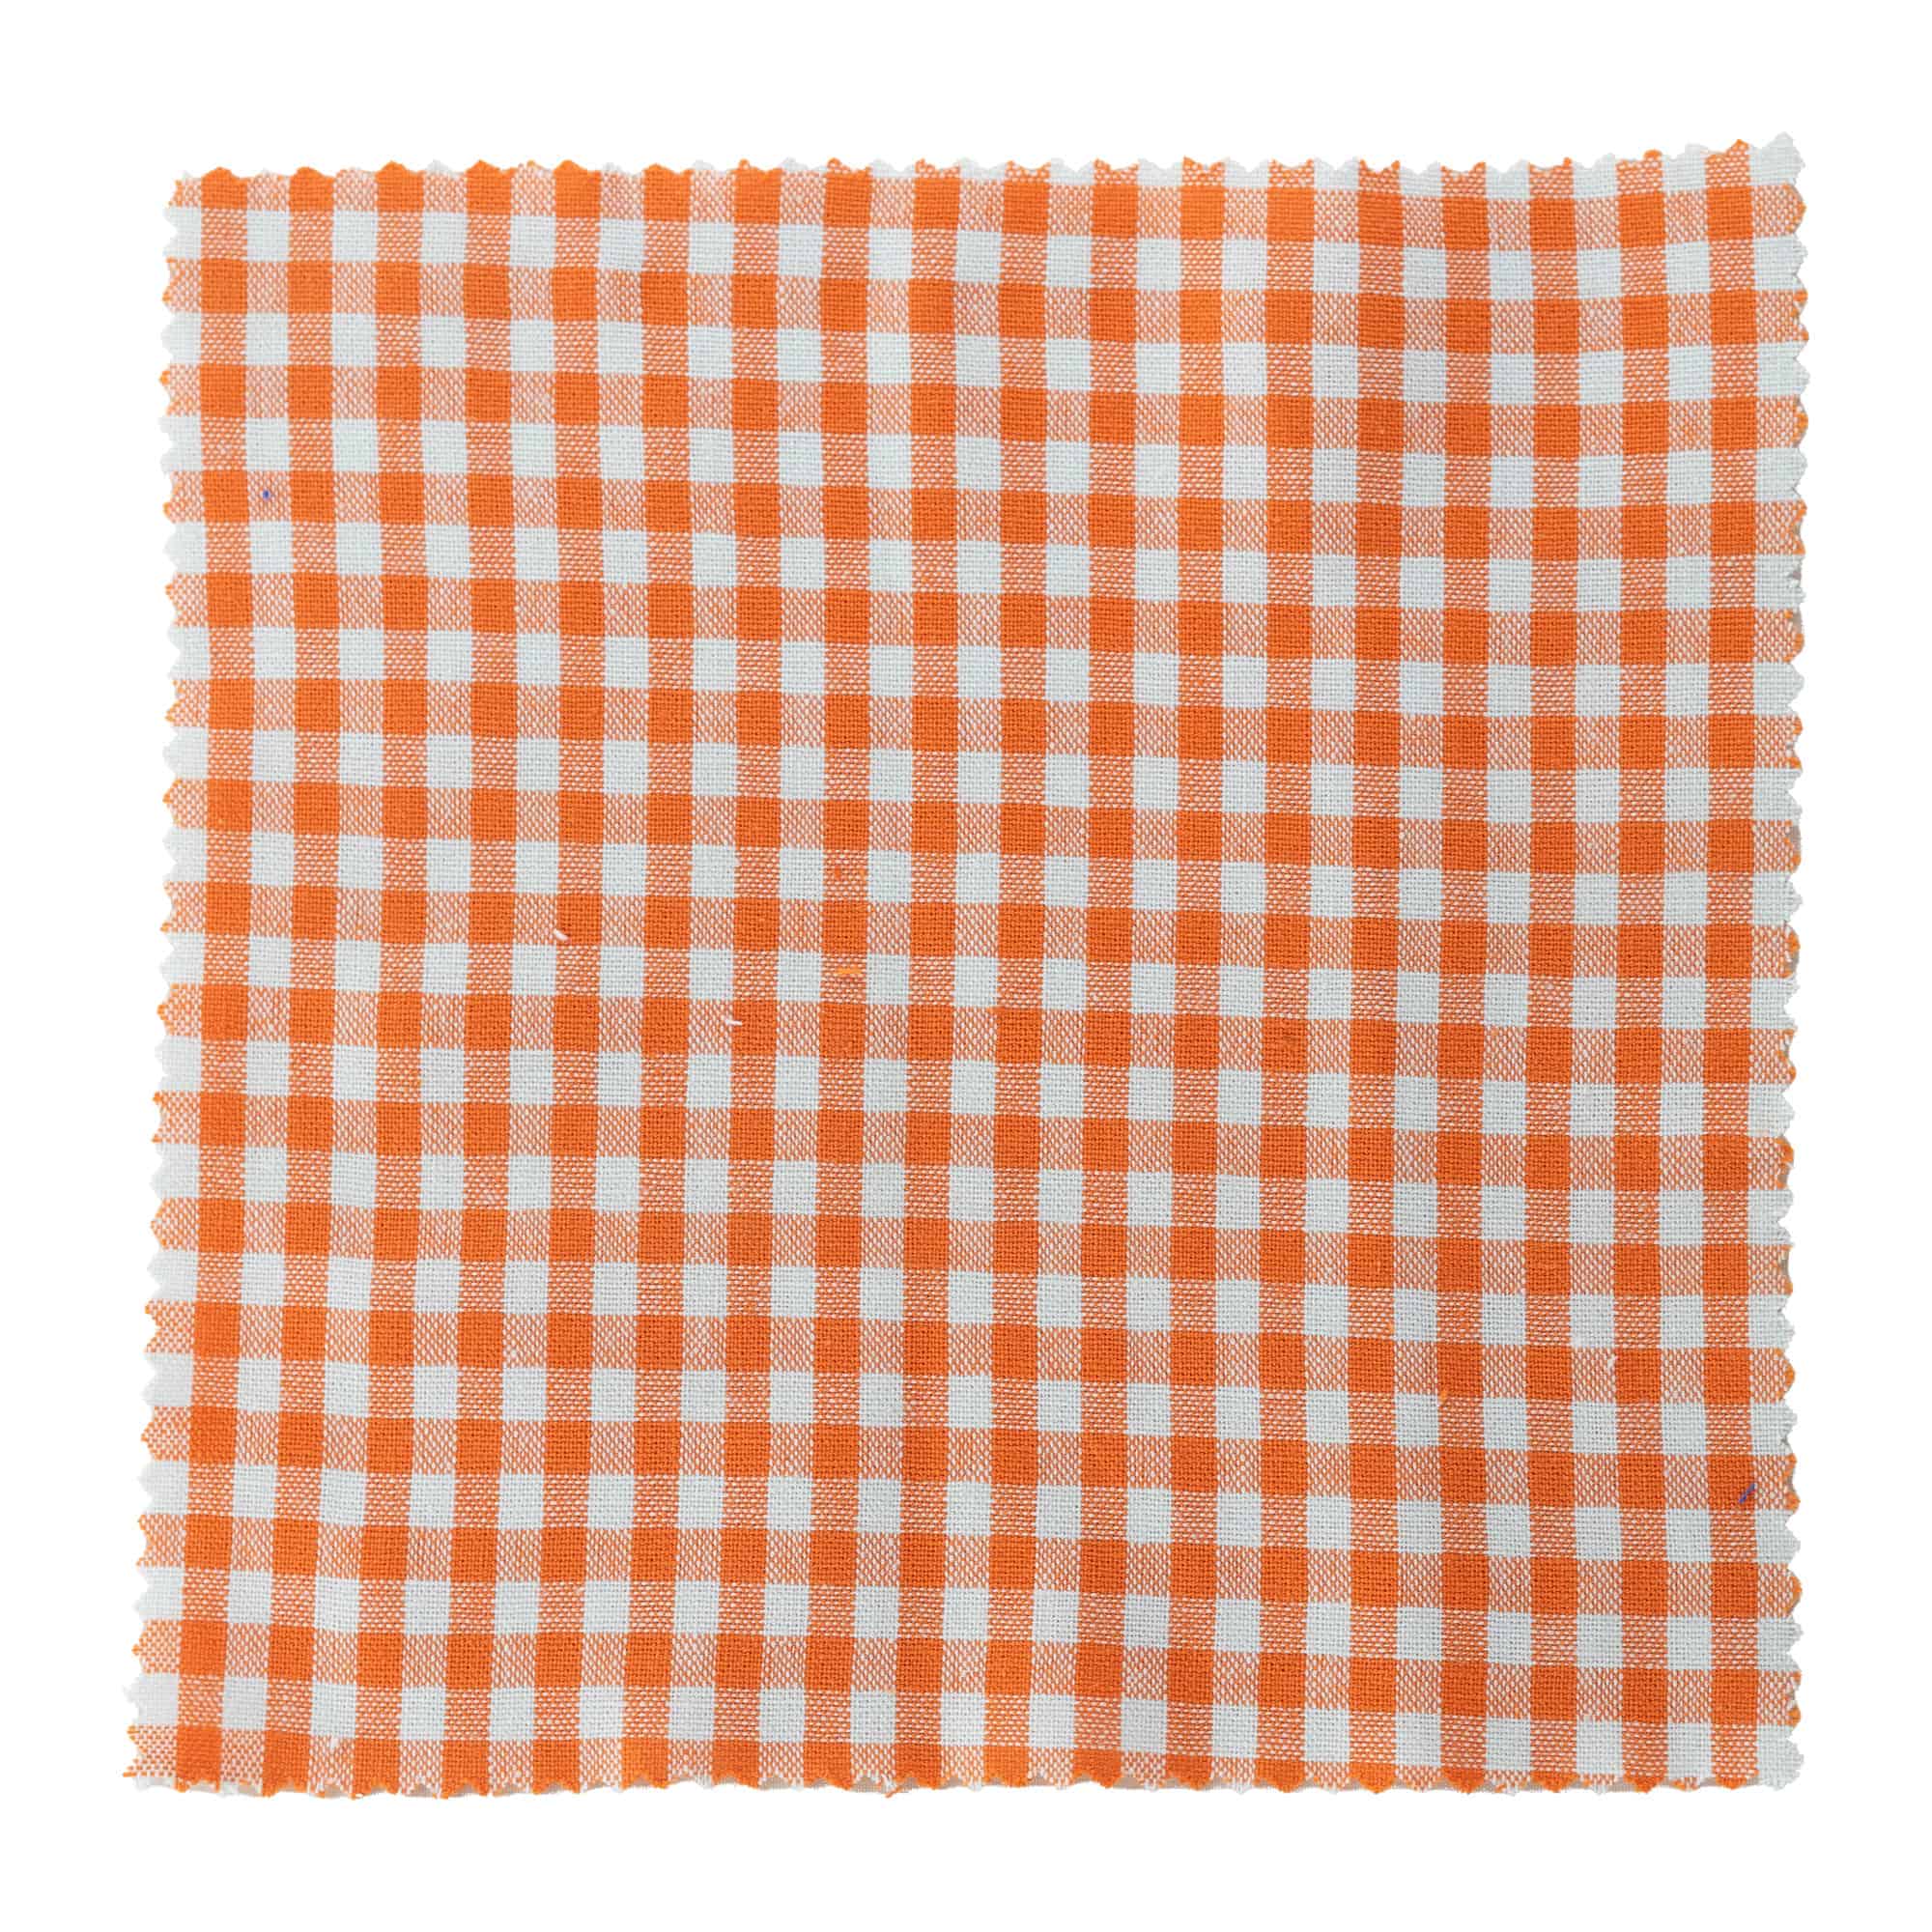 Kapturek na słoik w kratkę 15x15, kwadratowy, materiał tekstylny, kolor pomarańczowy, zamknięcie: TO58-TO82